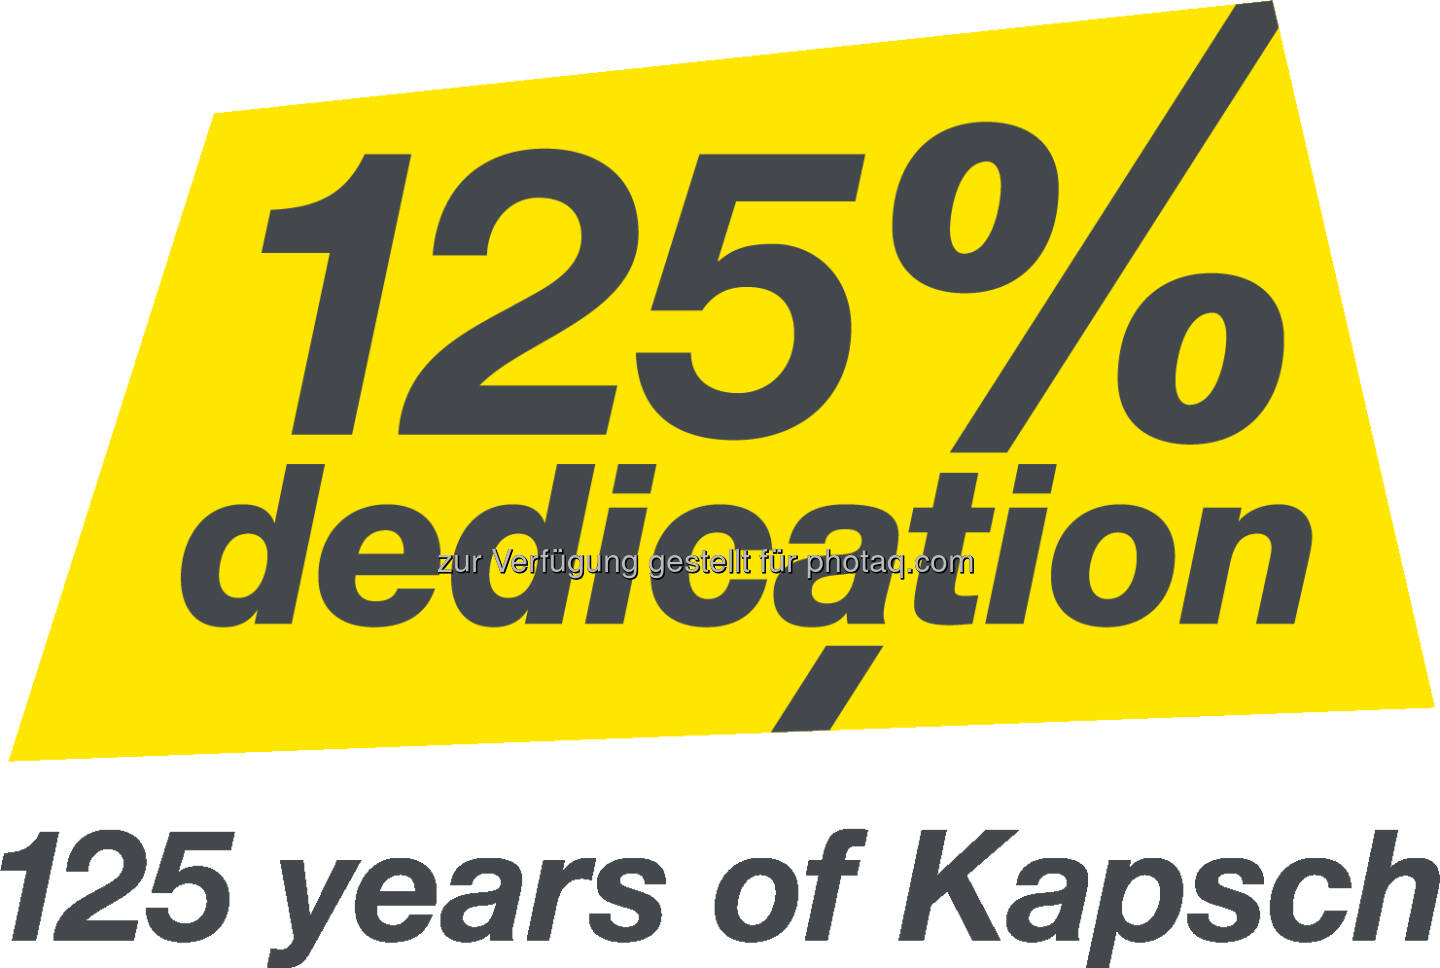 Das Logo zum 125. Jubiläum von Kapsch. ©Kapsch Group